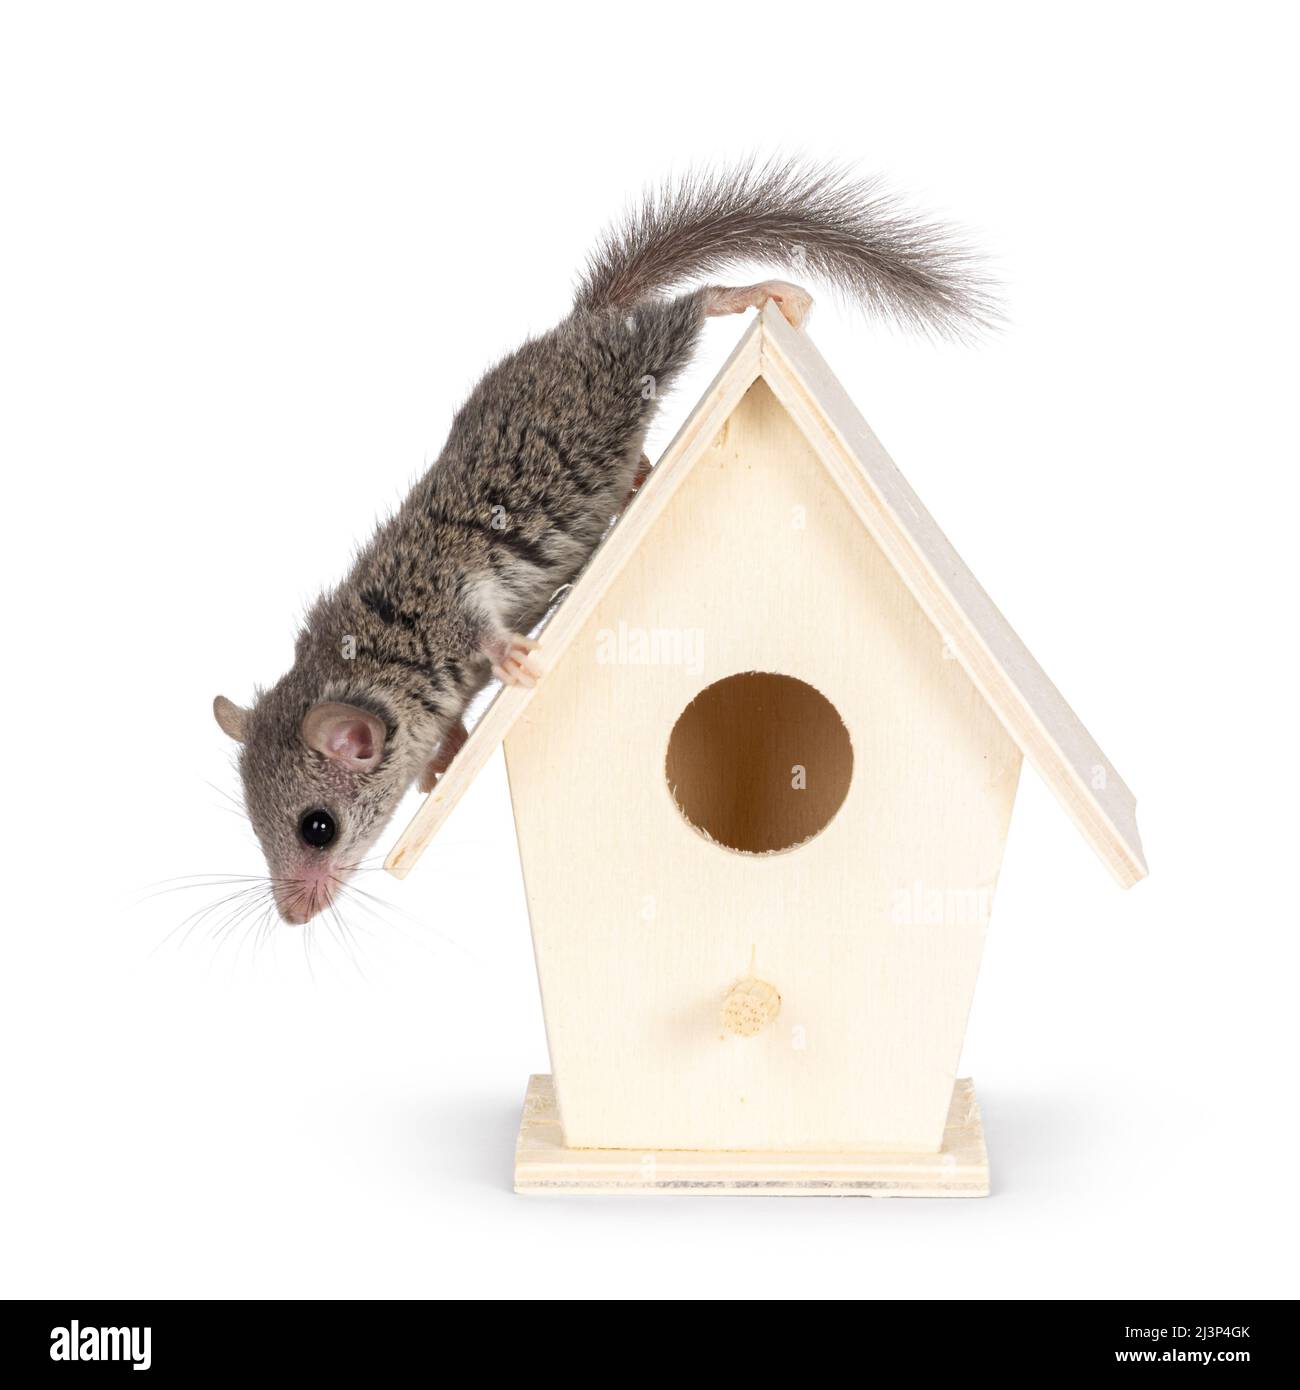 Mignon petit souris africaine alias Graphiurus murinus, debout sur le toit de la petite maison d'oiseaux en bois. En regardant loin de l'appareil photo. Isolé sur un blanc Banque D'Images